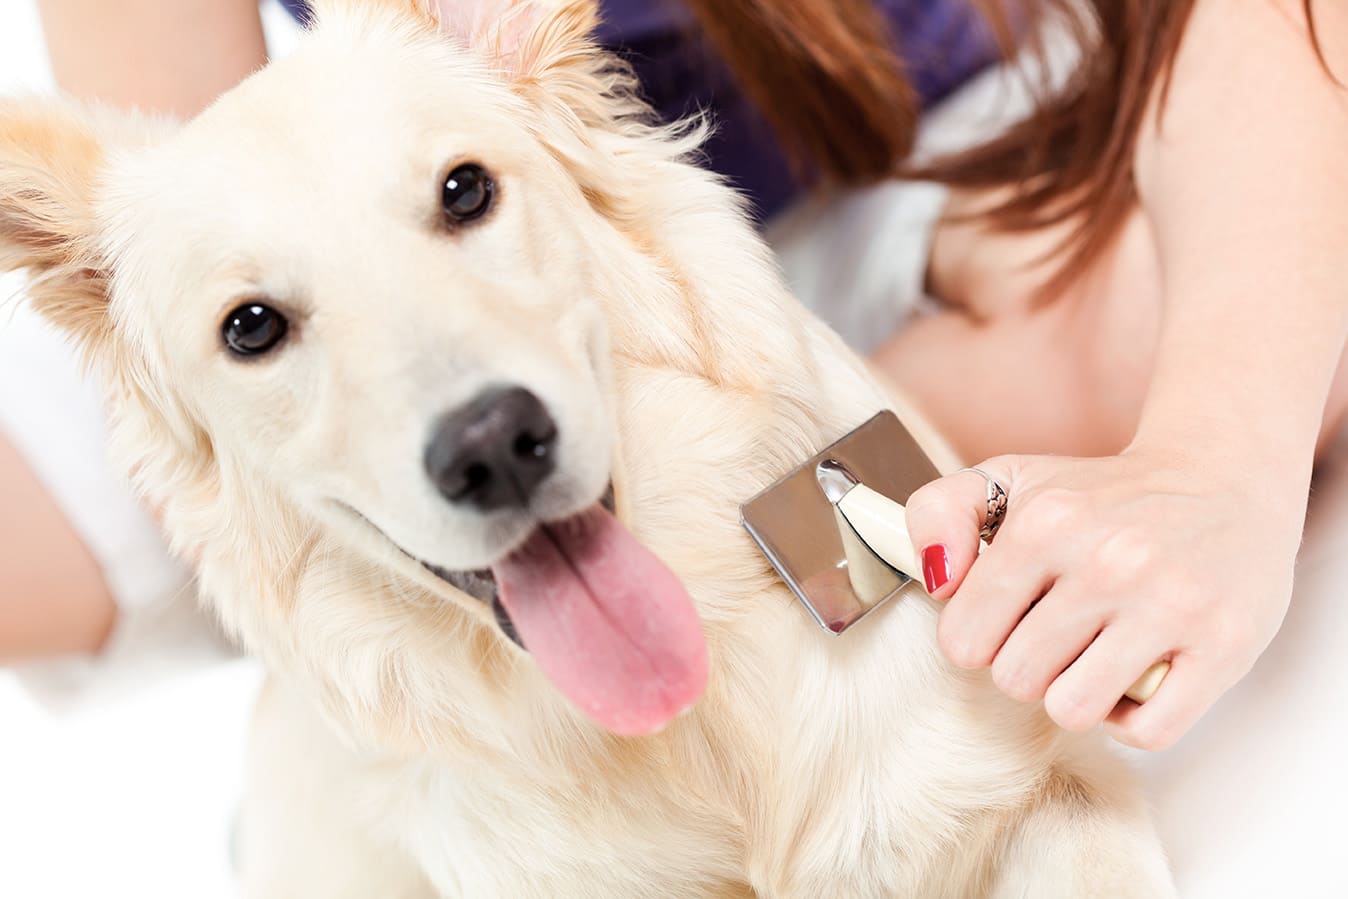 Fellpflege beim Hund: richtig bürsten, baden und trimmen für glänzendes Fell